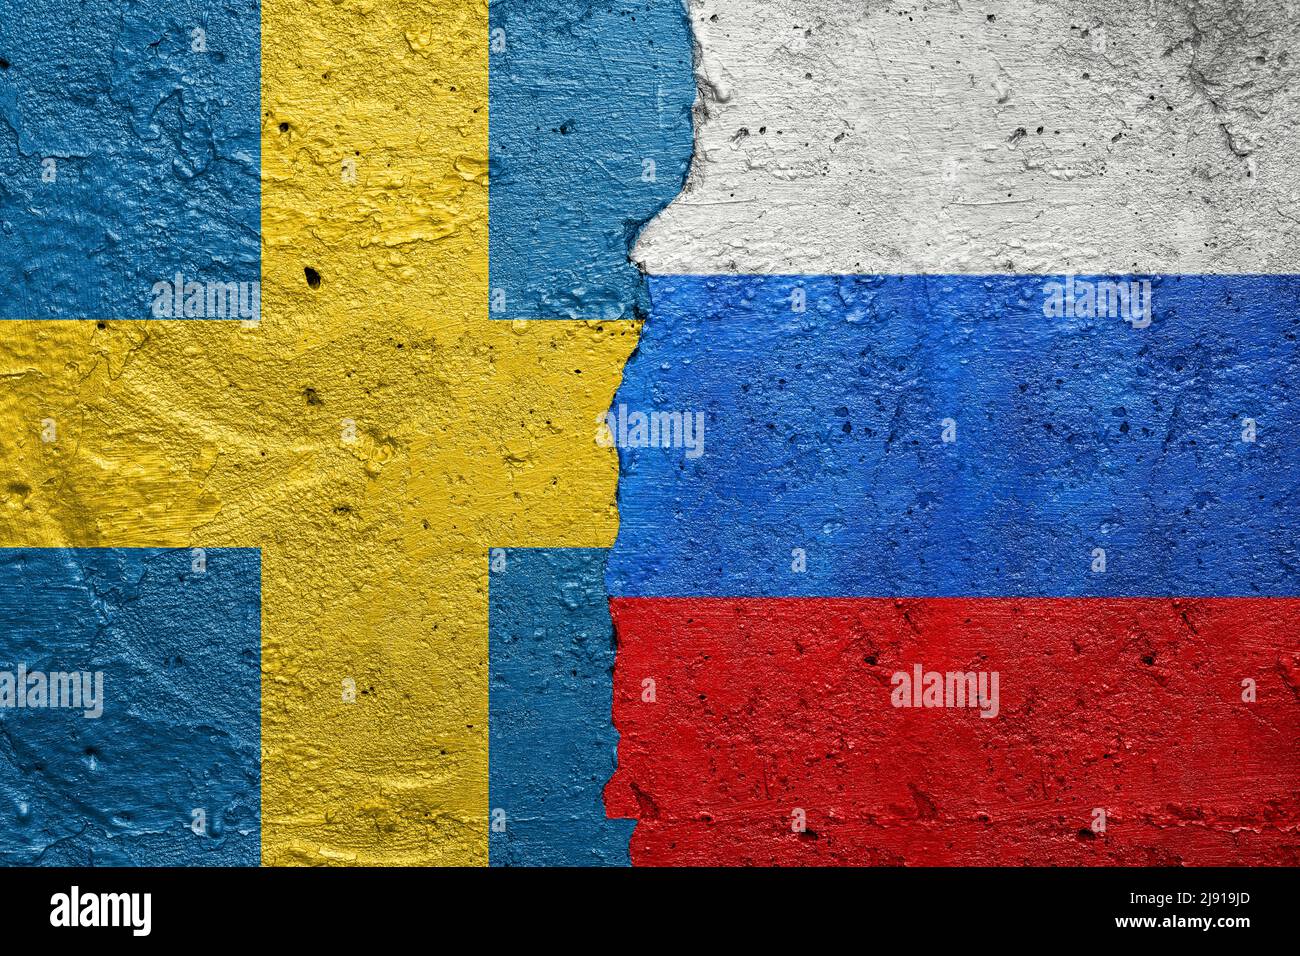 Suède contre Russie - mur en béton fissuré peint avec un drapeau suédois à gauche et un drapeau russe à droite Banque D'Images